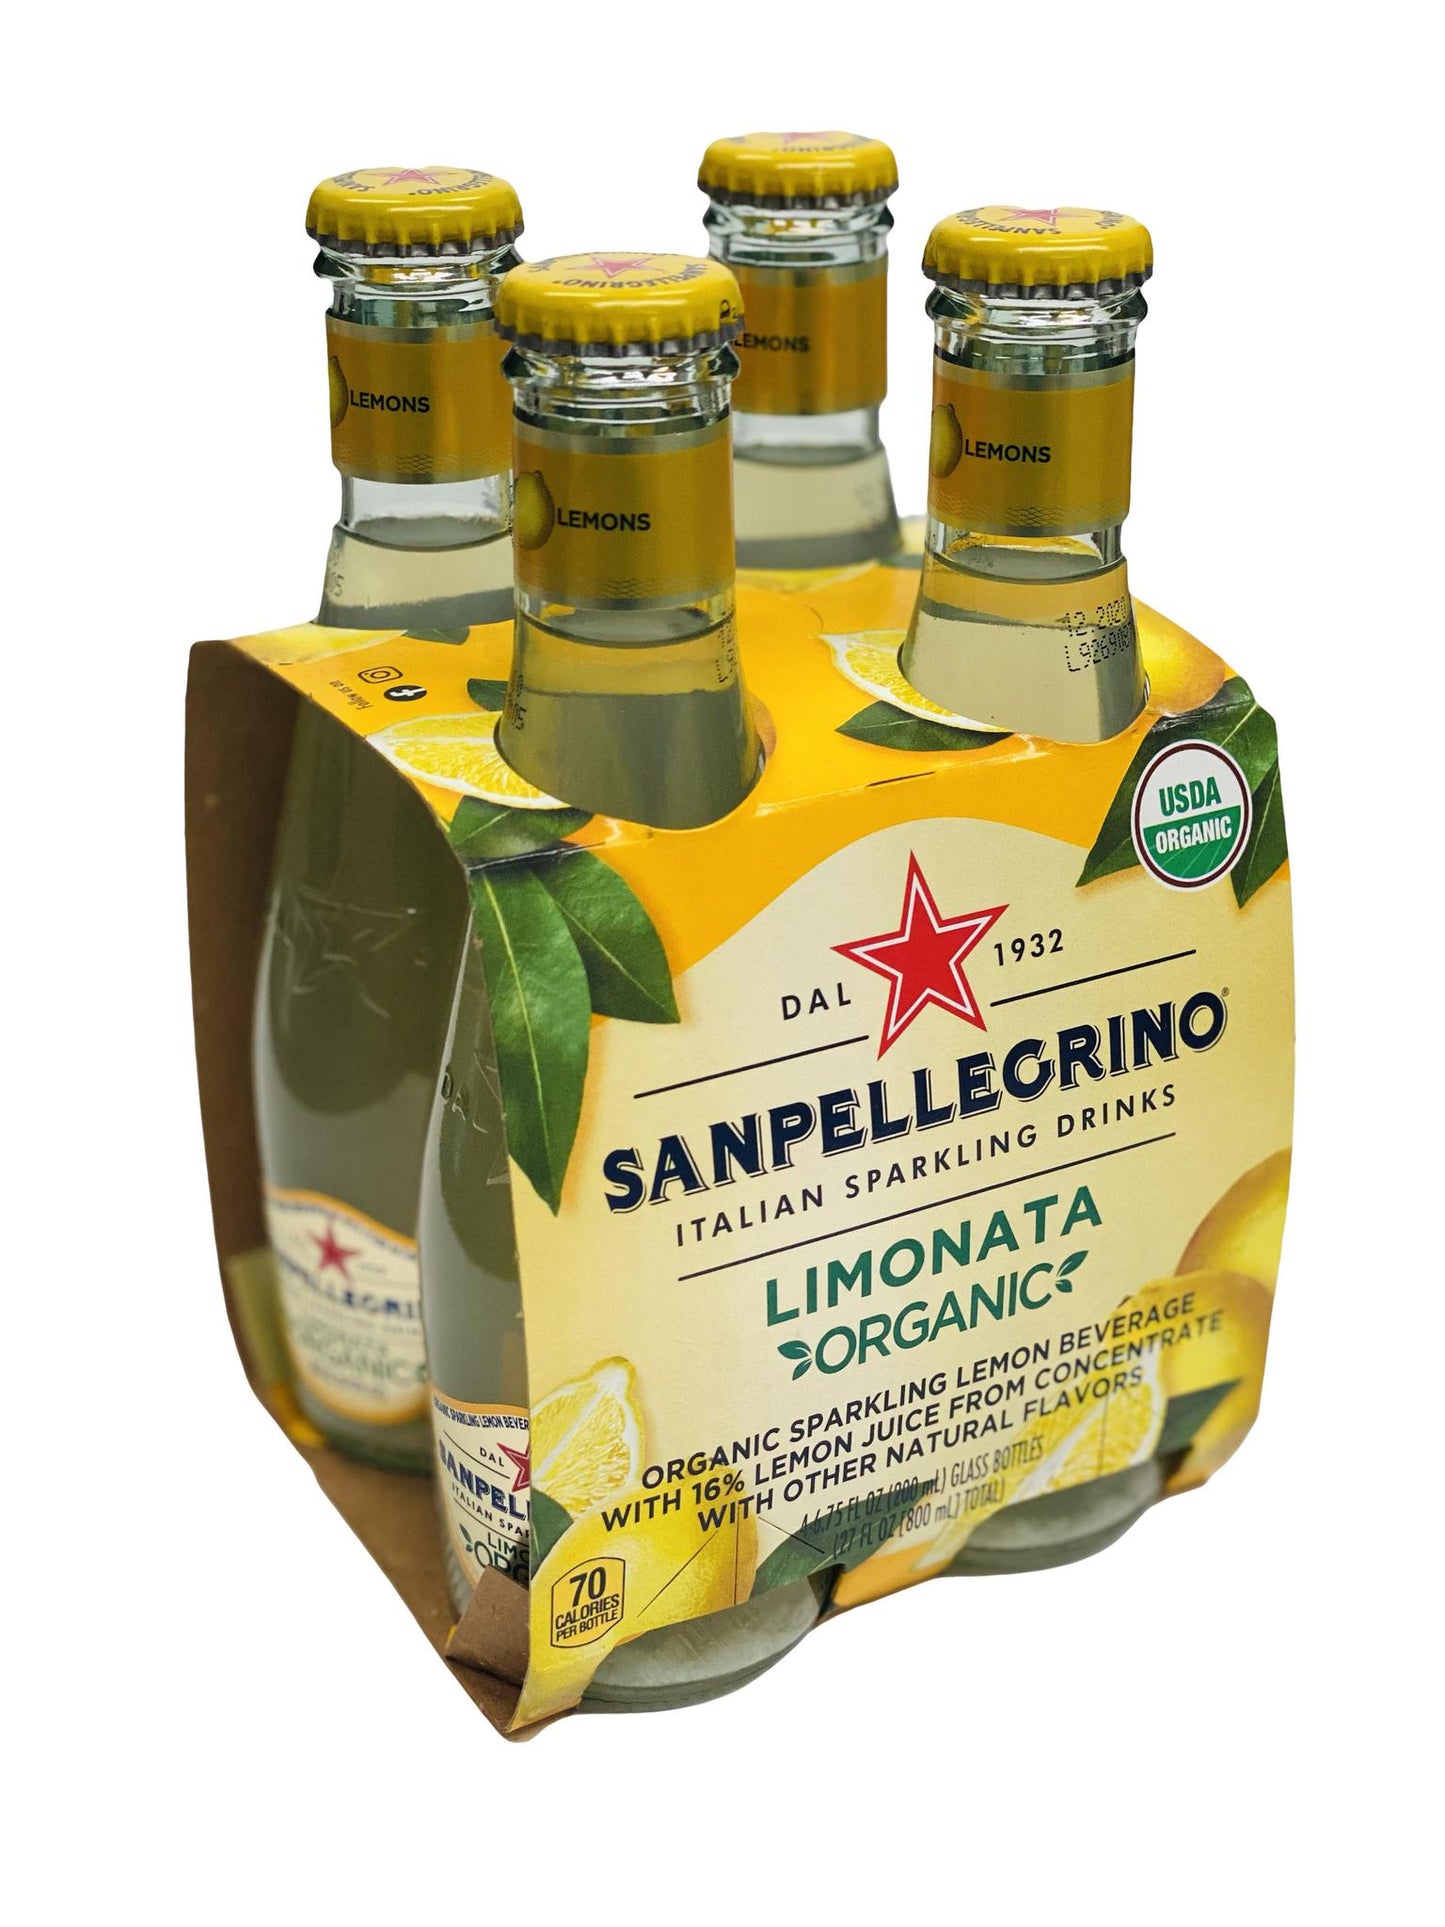 Sanpellegrino Limonata Organic Glass Bottles, 6.25 fl oz